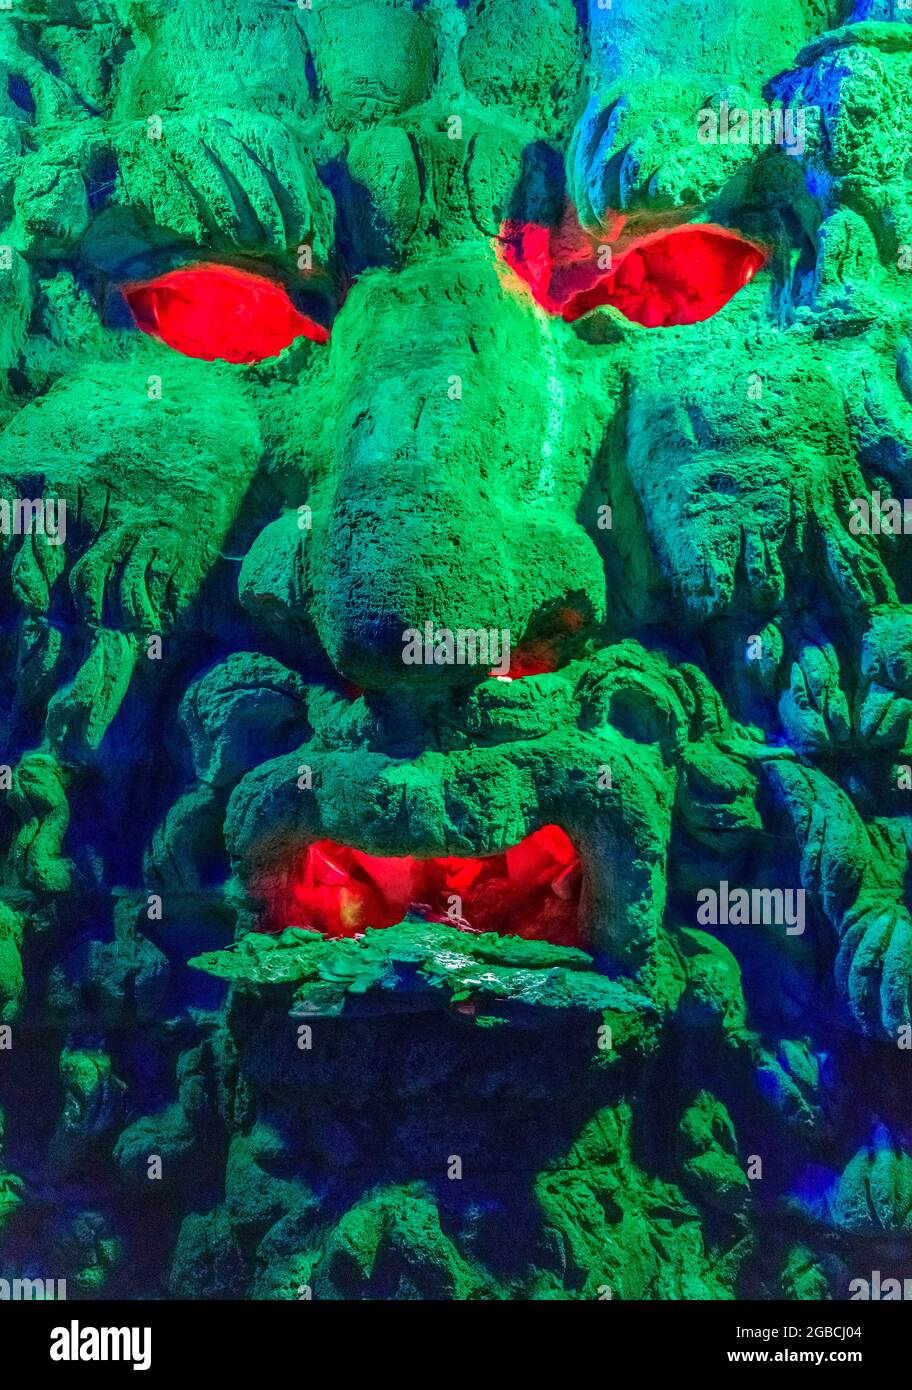 Groteske grüne Monster Kopf mit roten Augen und Mund. Gefunden in der Grotte unter dem Labyrinth in Leeds Castle kent england Stockfoto